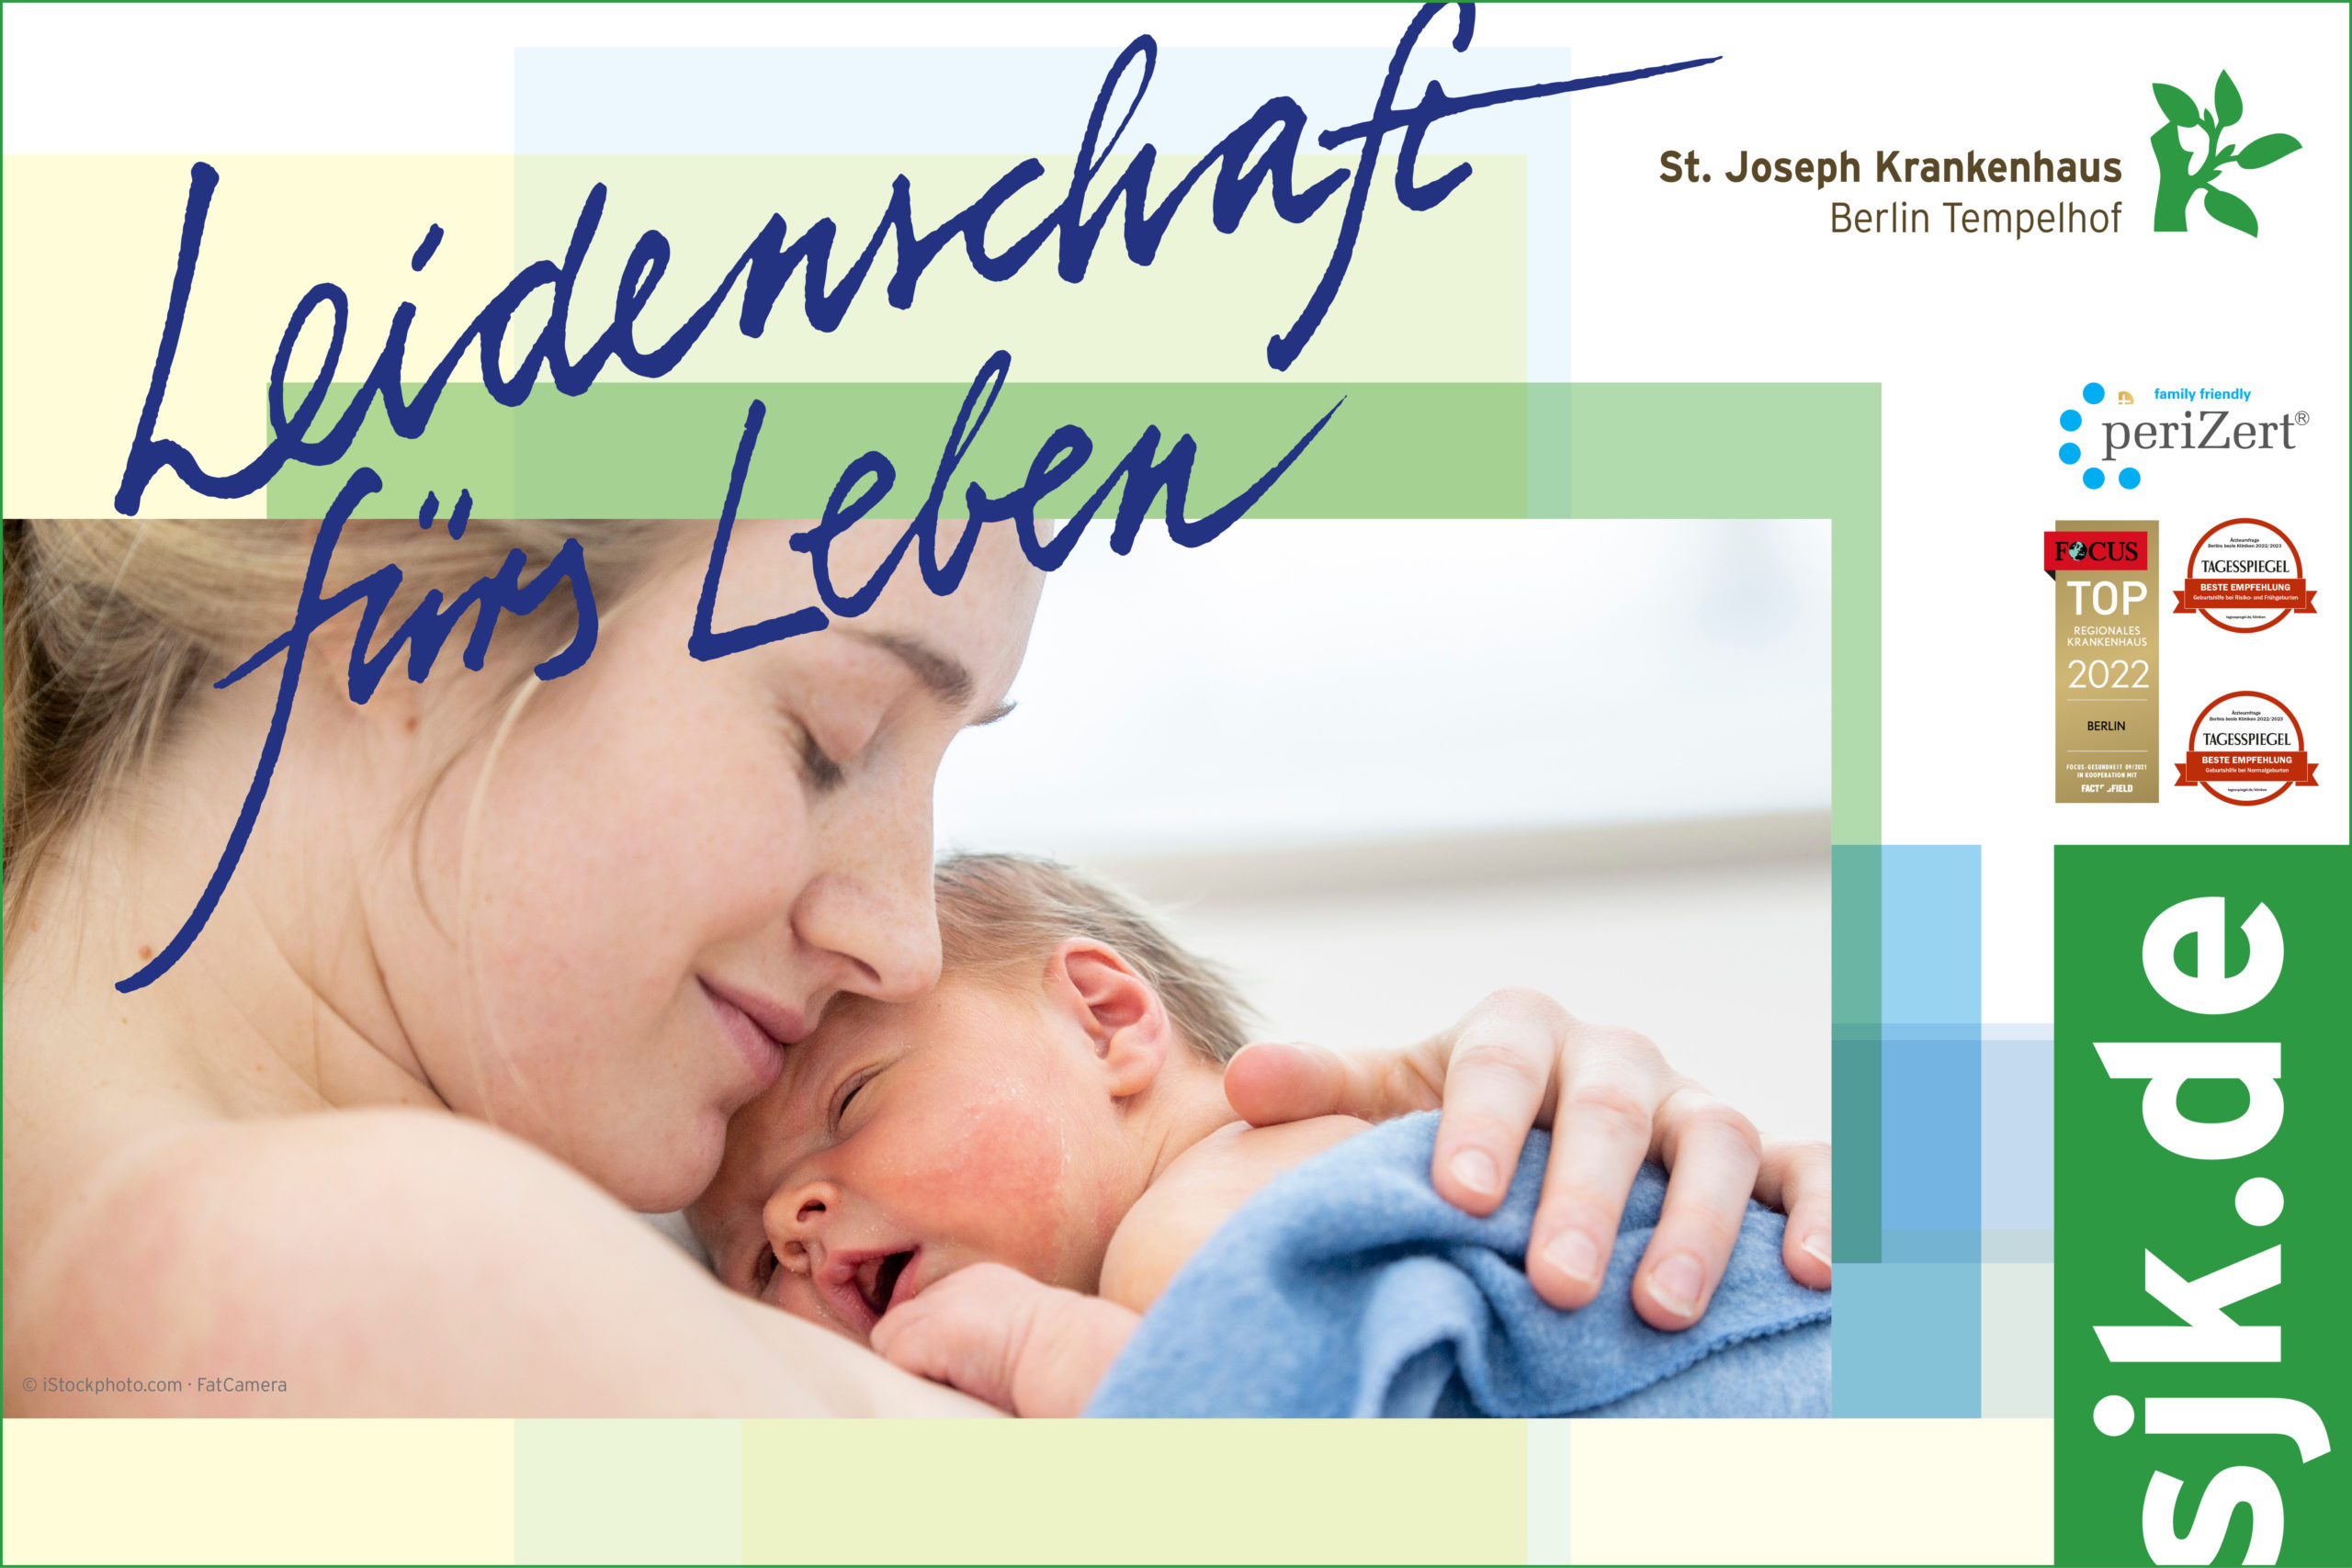 Das St. Joseph Krankenhaus Berlin-Tempelhof wurde als "family friendly" ausgezeichnet. Foto: 